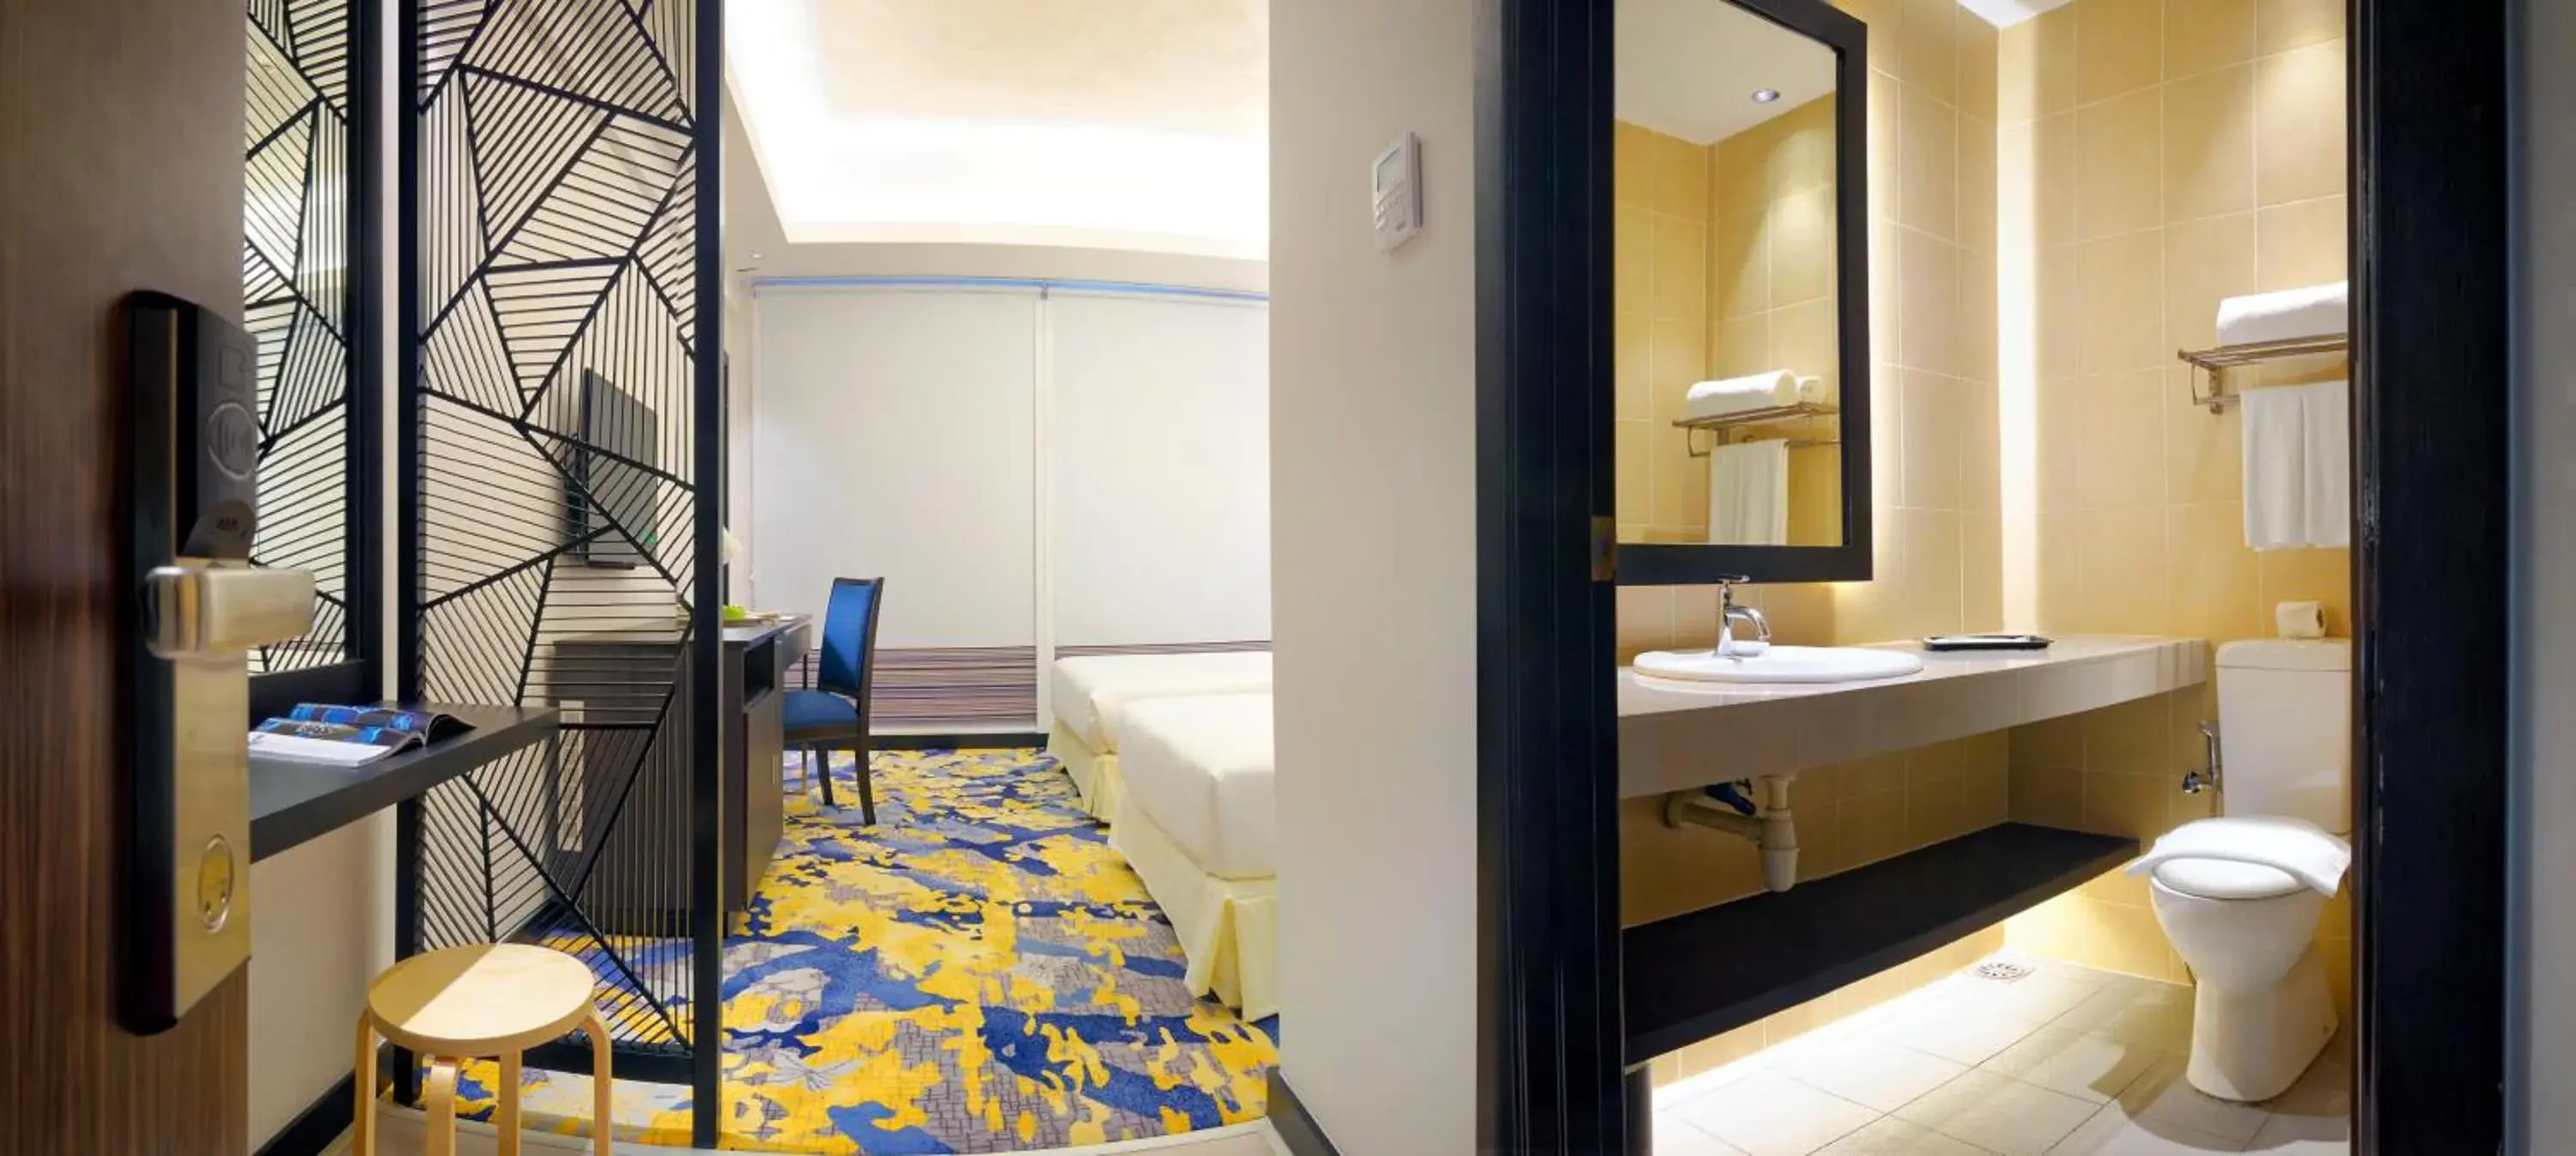 Bedroom, Bathroom in Bespoke Hotel Puchong